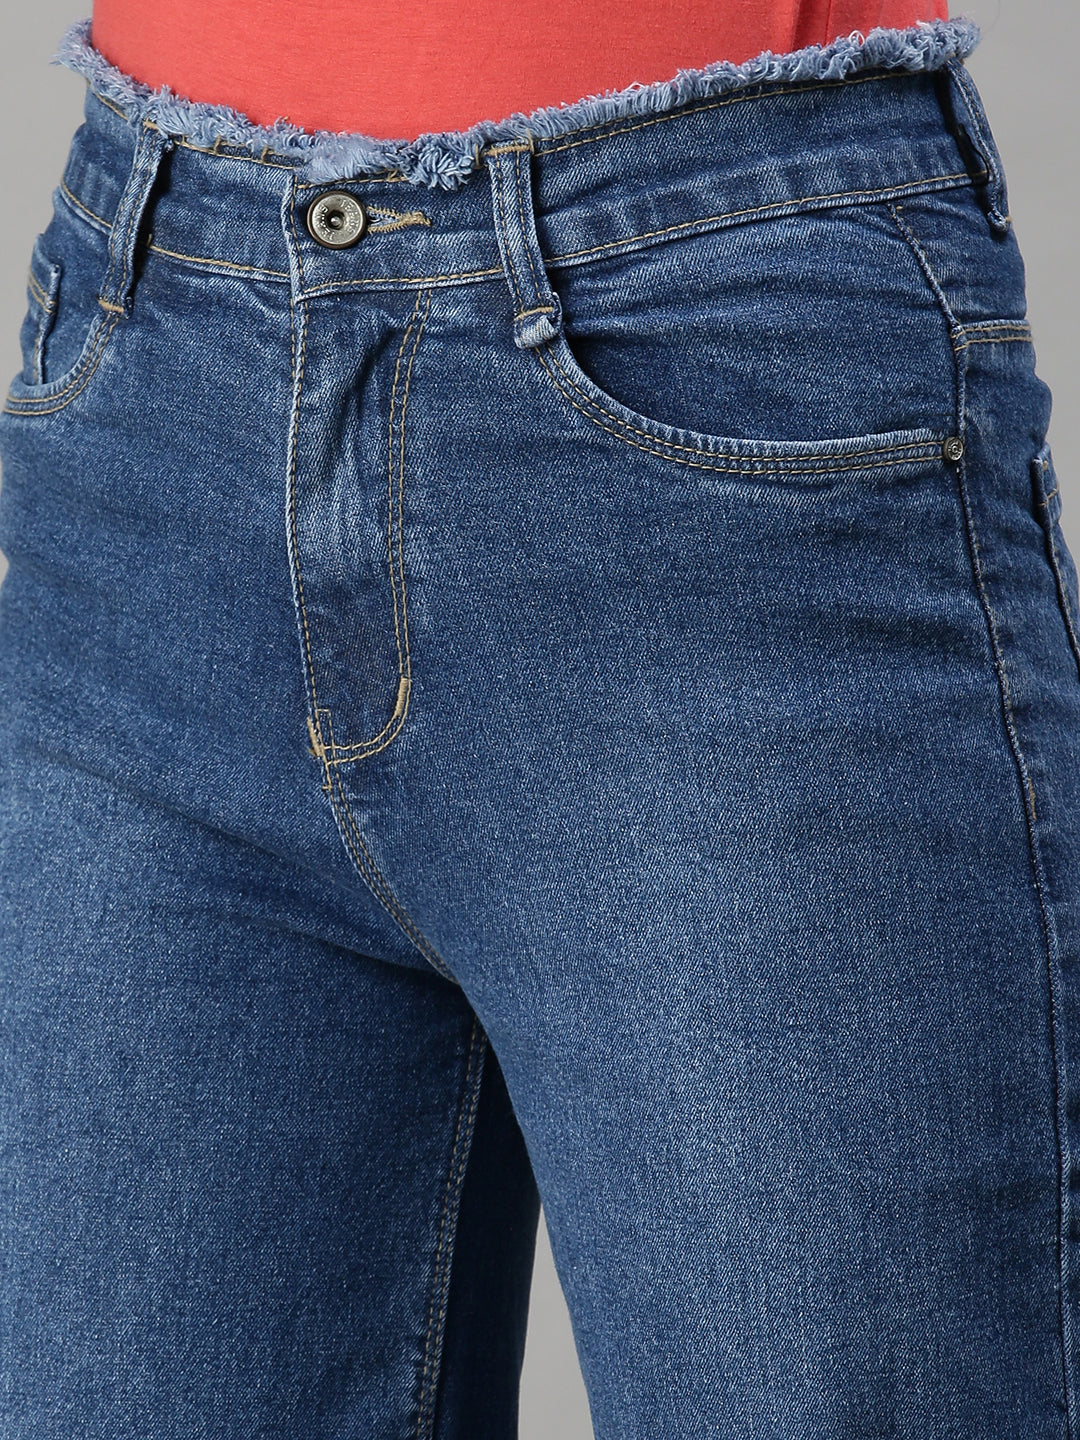 Women's Denim Wide Leg Blue Jeans